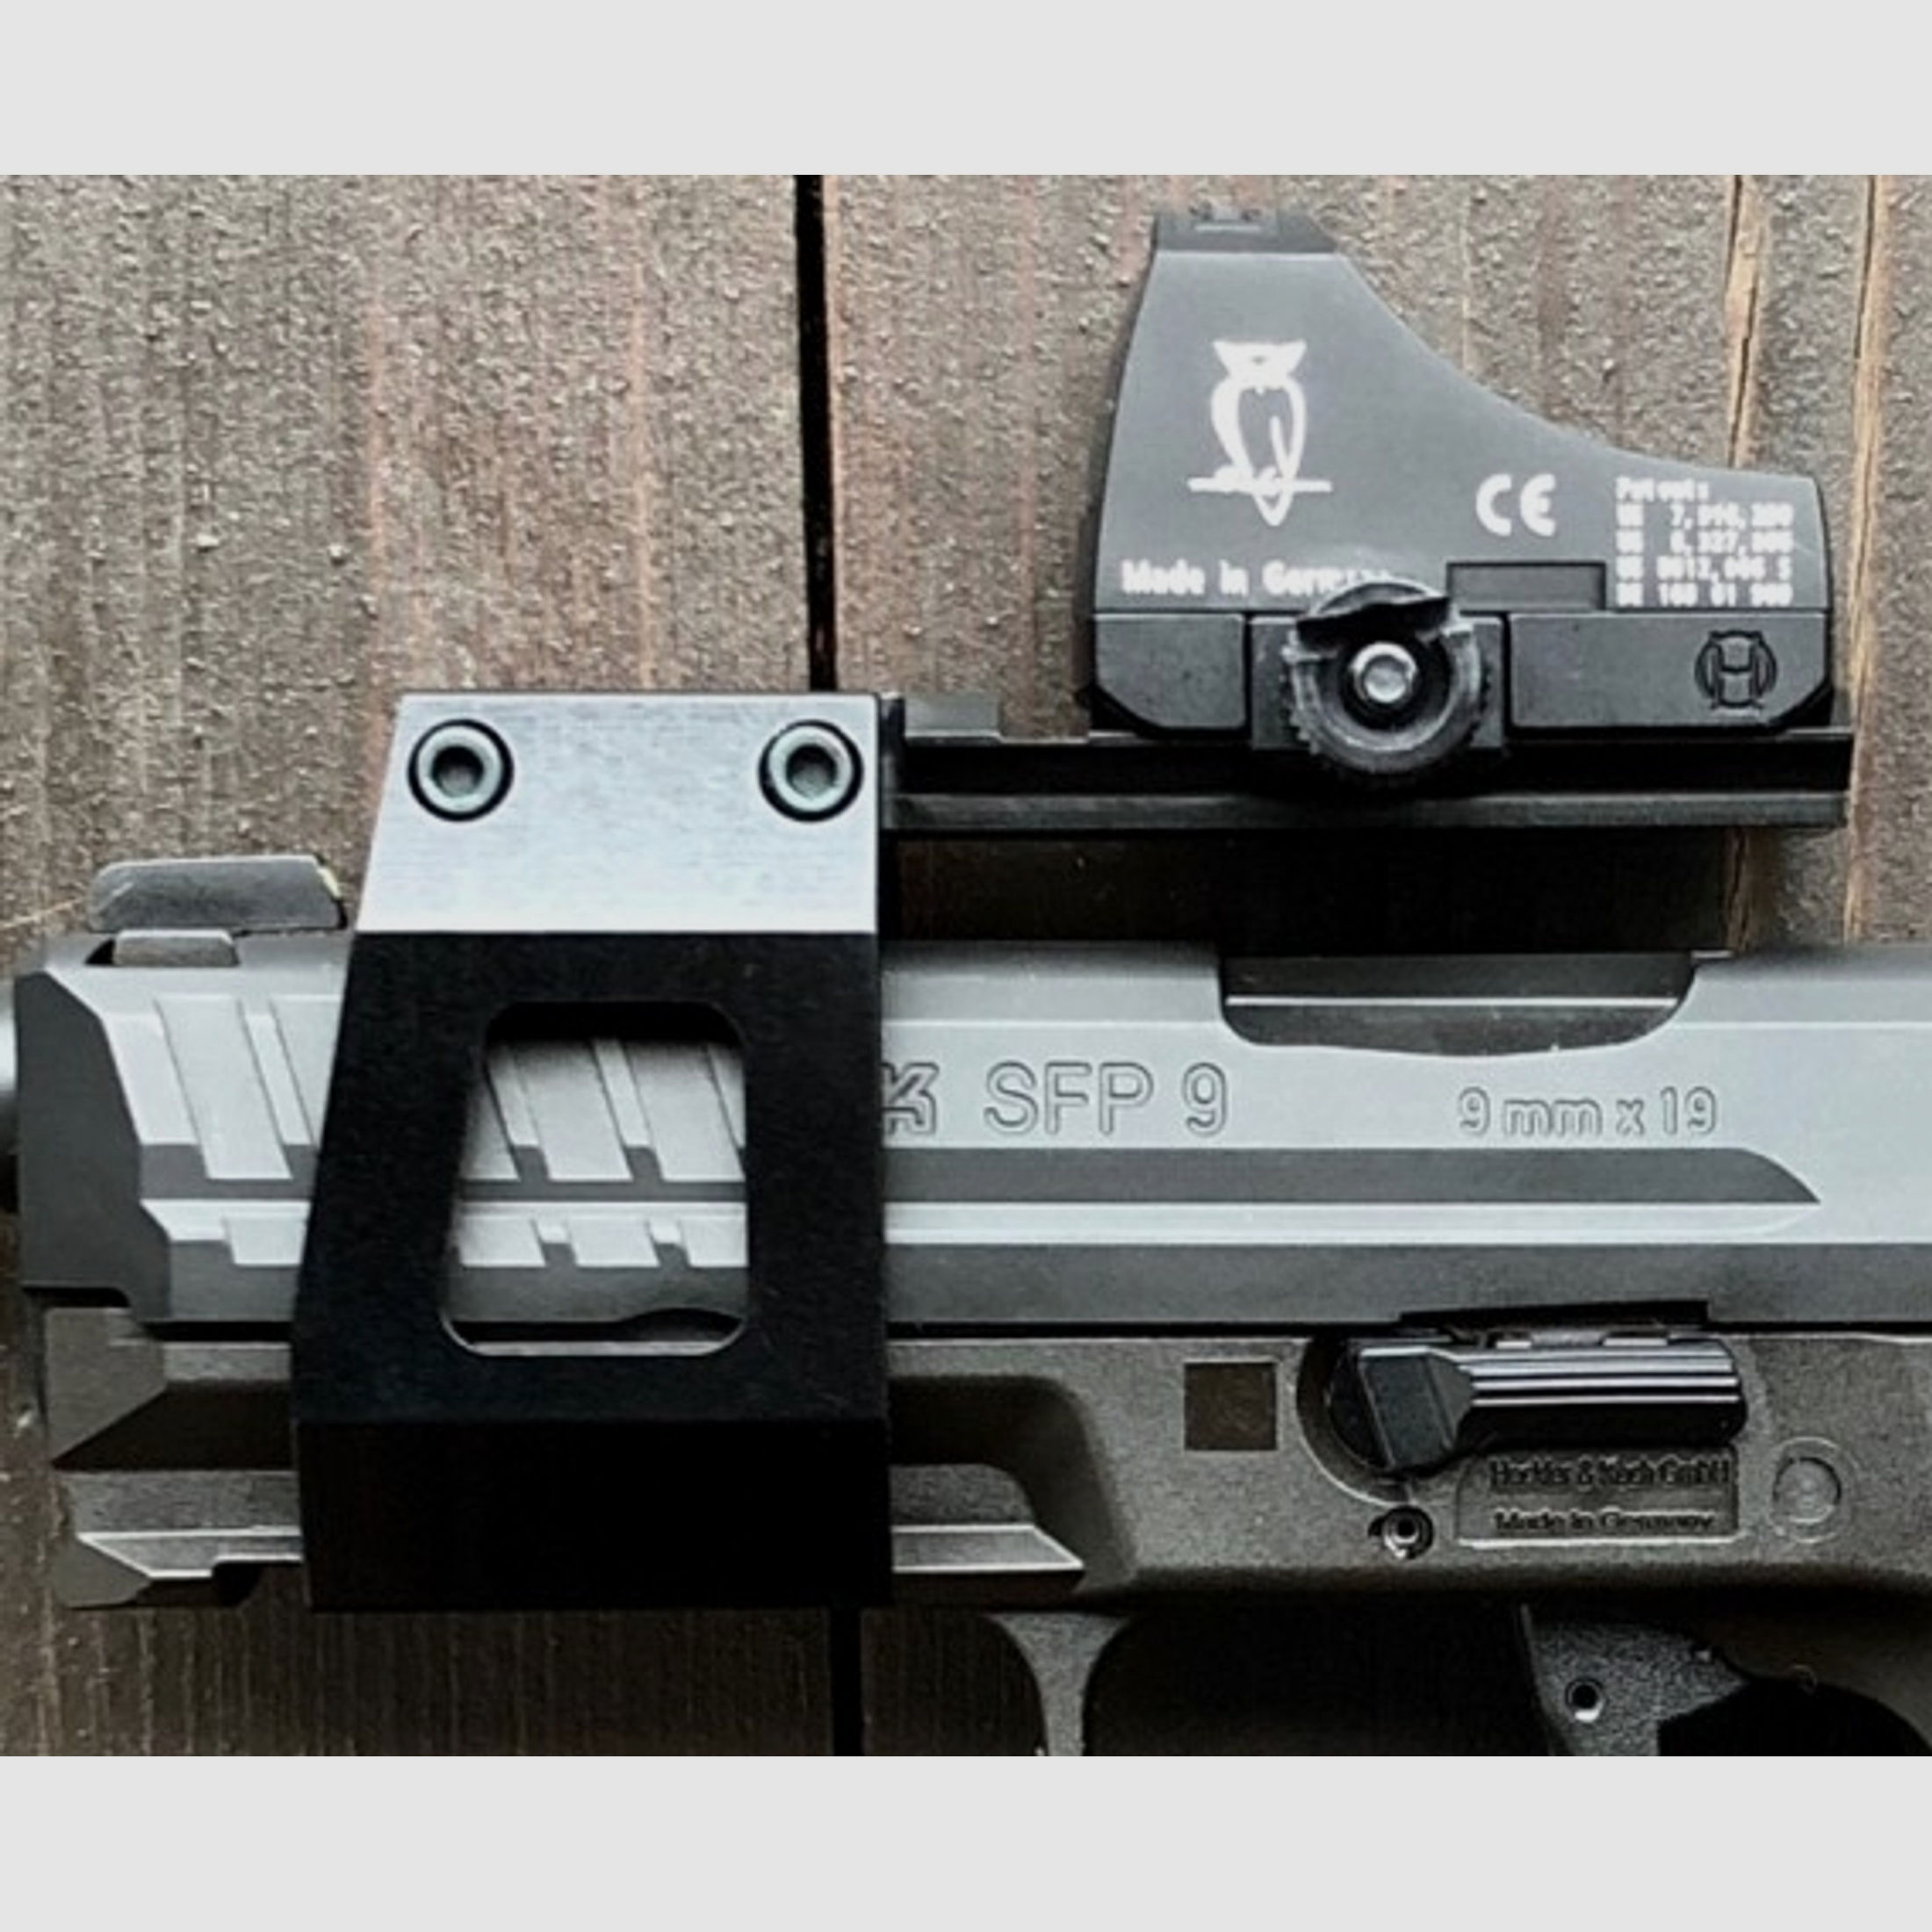 WL-HK-Montage für HK45, P30, SFP40 und SFP9